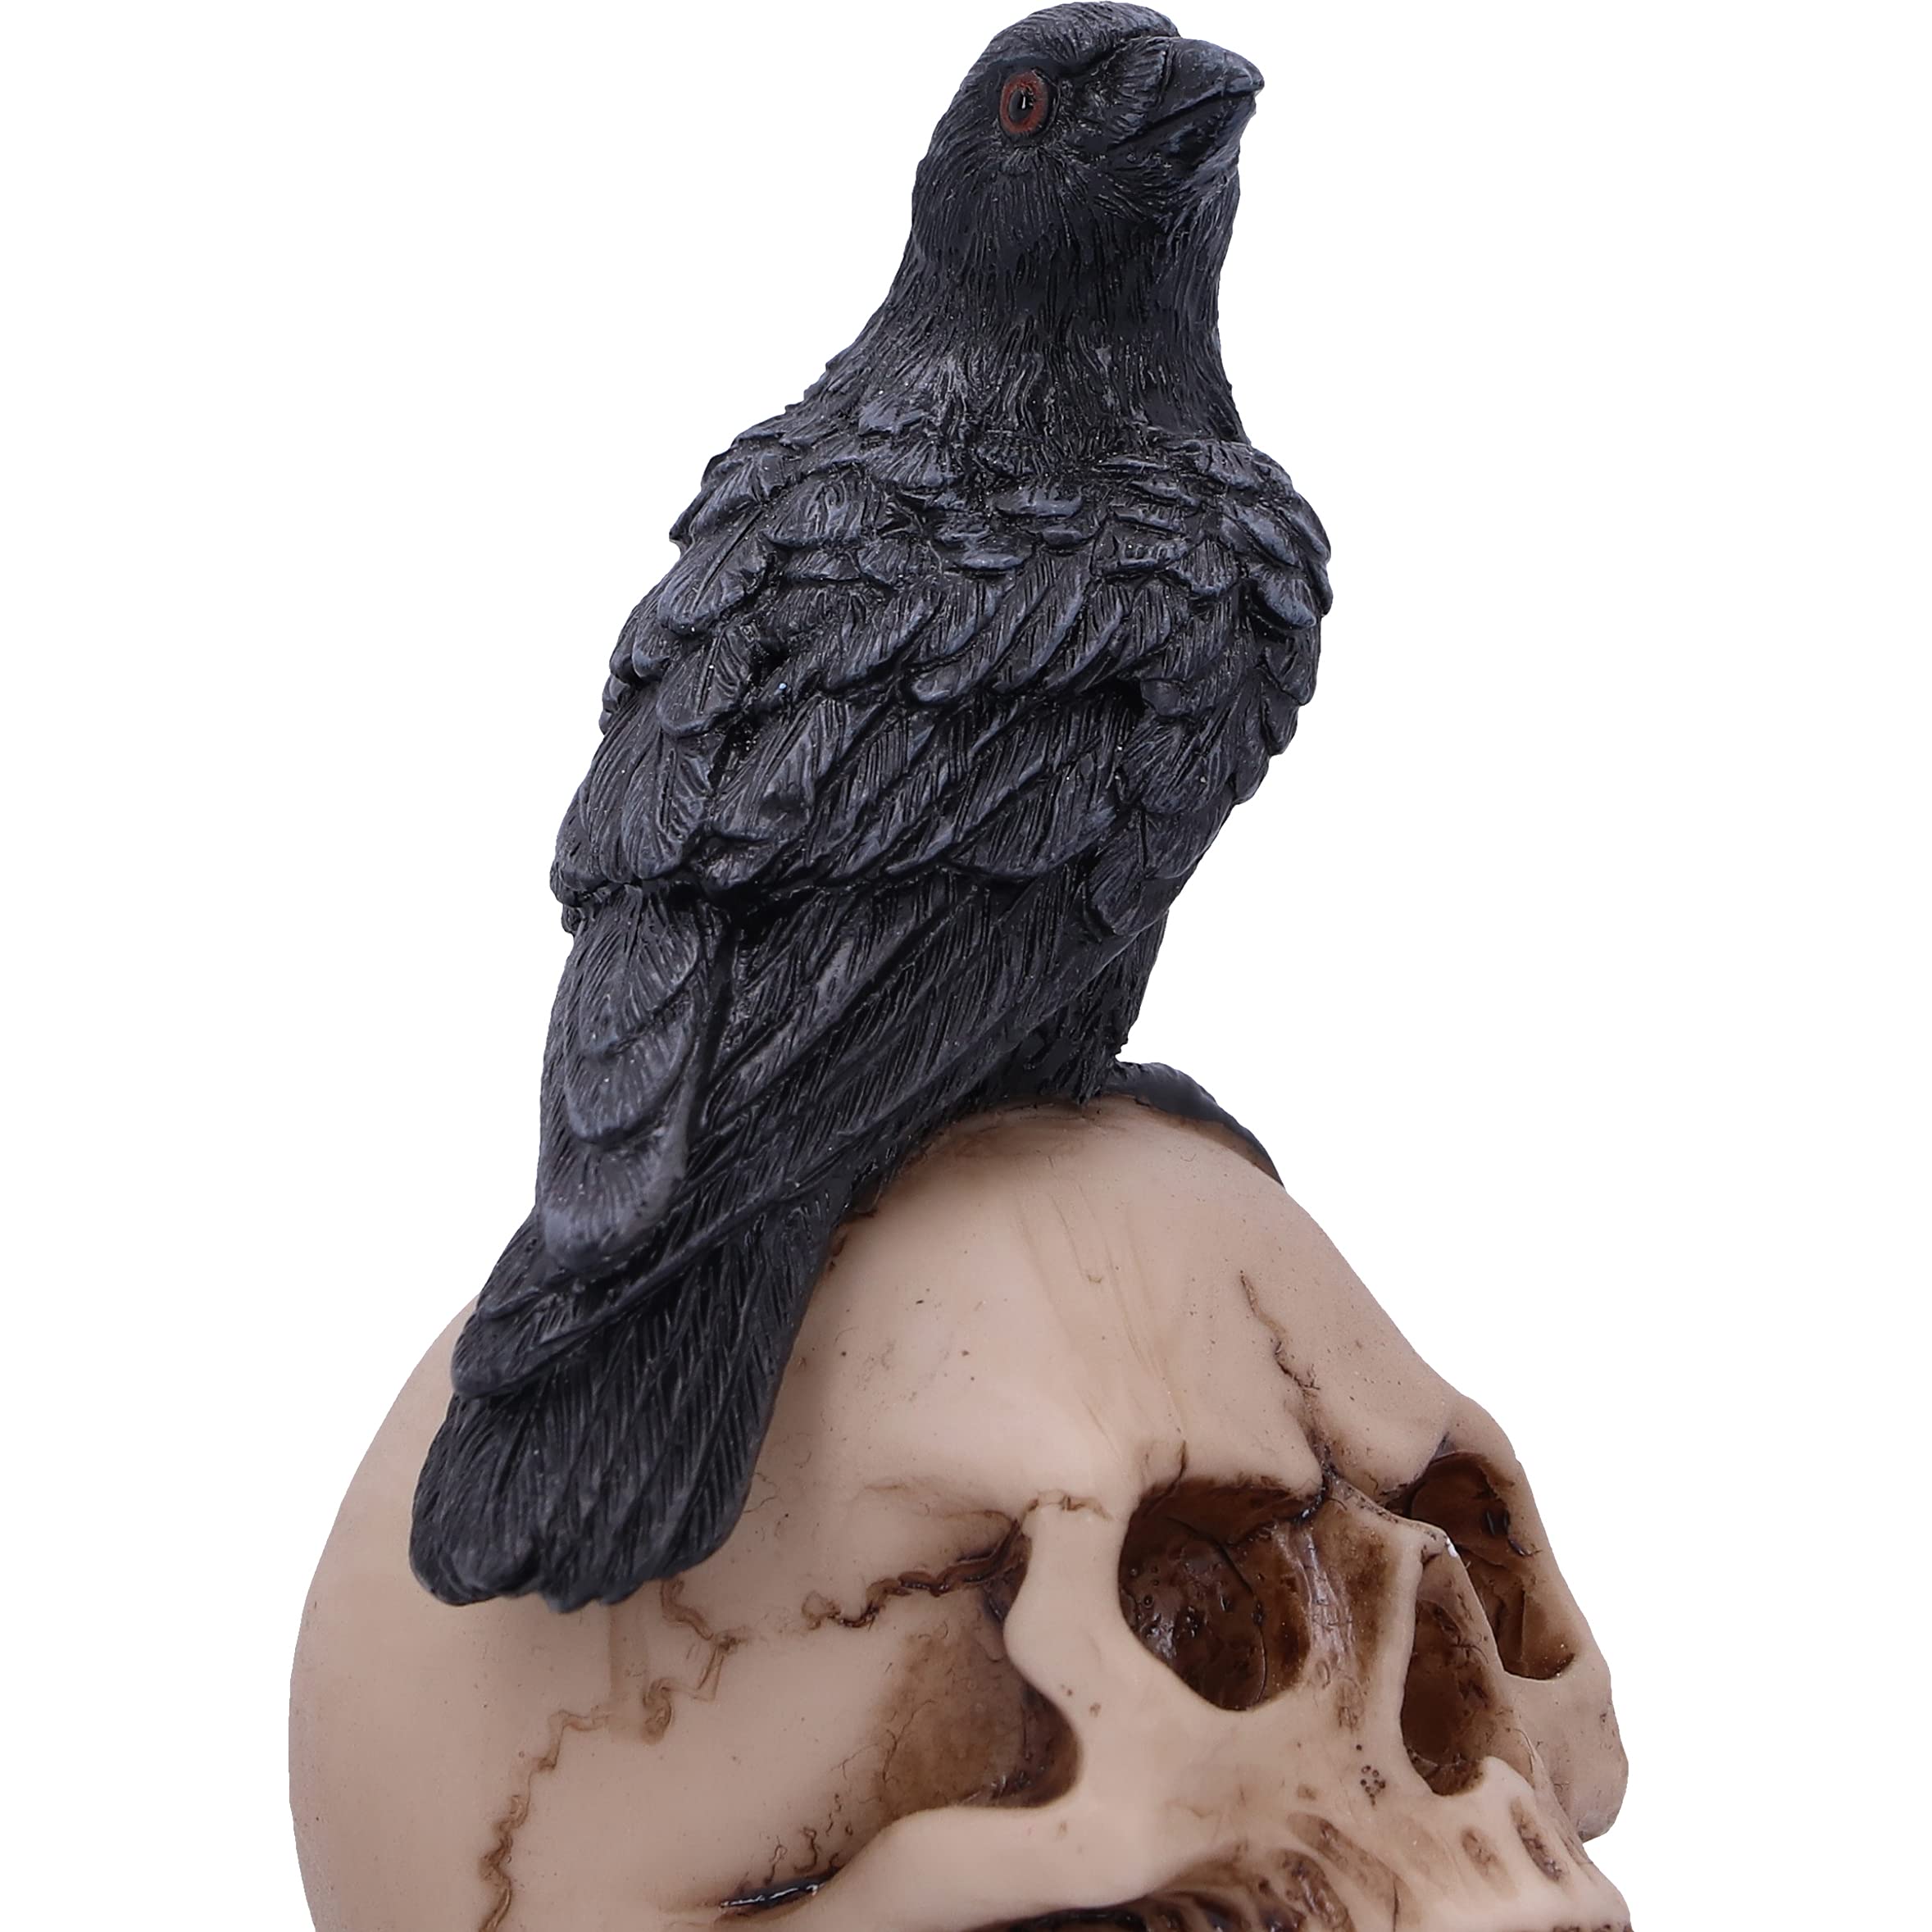 Raven Skull Statue